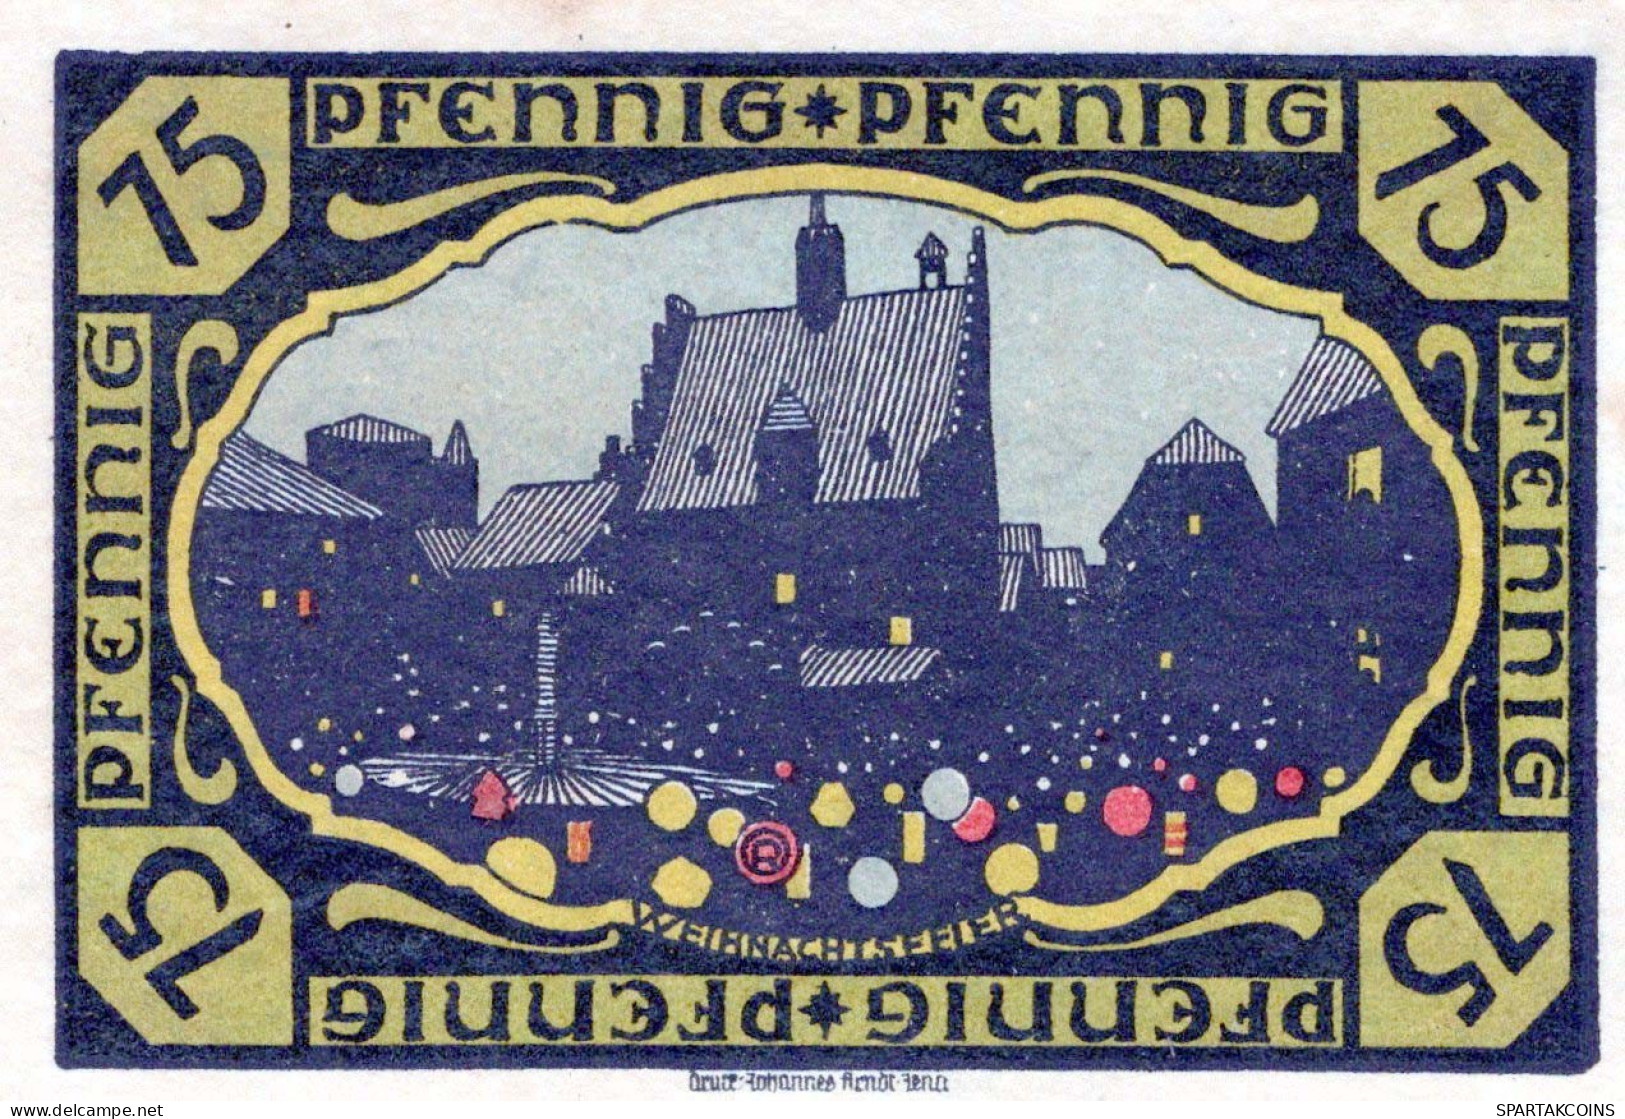 75 PFENNIG 1914-1924 Stadt PÖSSNECK Thuringia UNC DEUTSCHLAND Notgeld #PB621 - Lokale Ausgaben